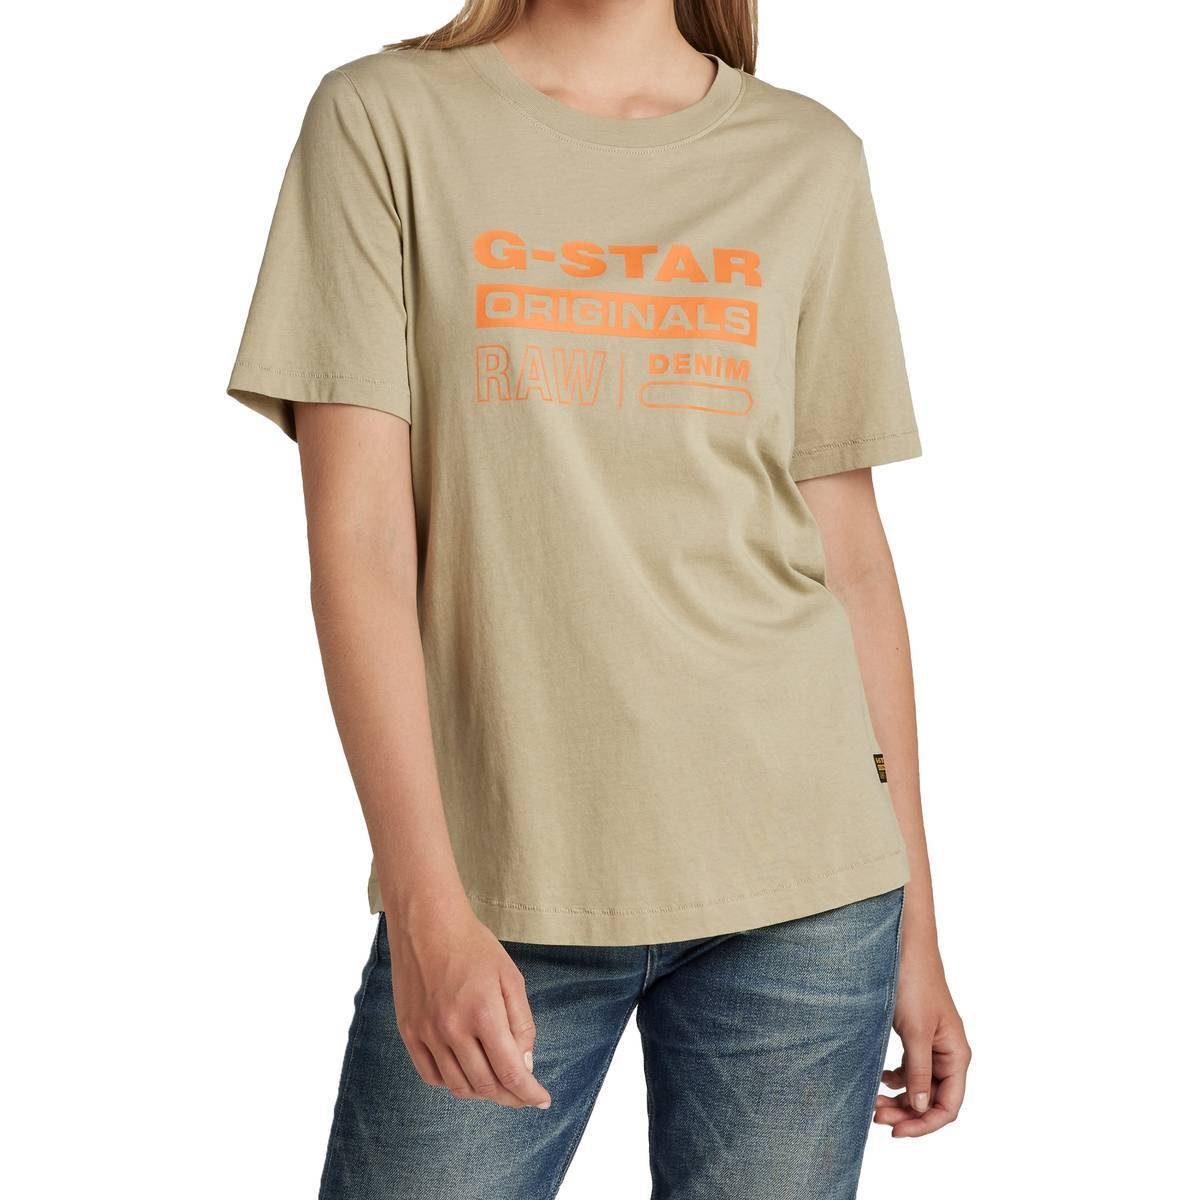 Damen T-Shirt Moos) Label Grün Regular G-Star RAW Originals (lt - Fit T-Shirt